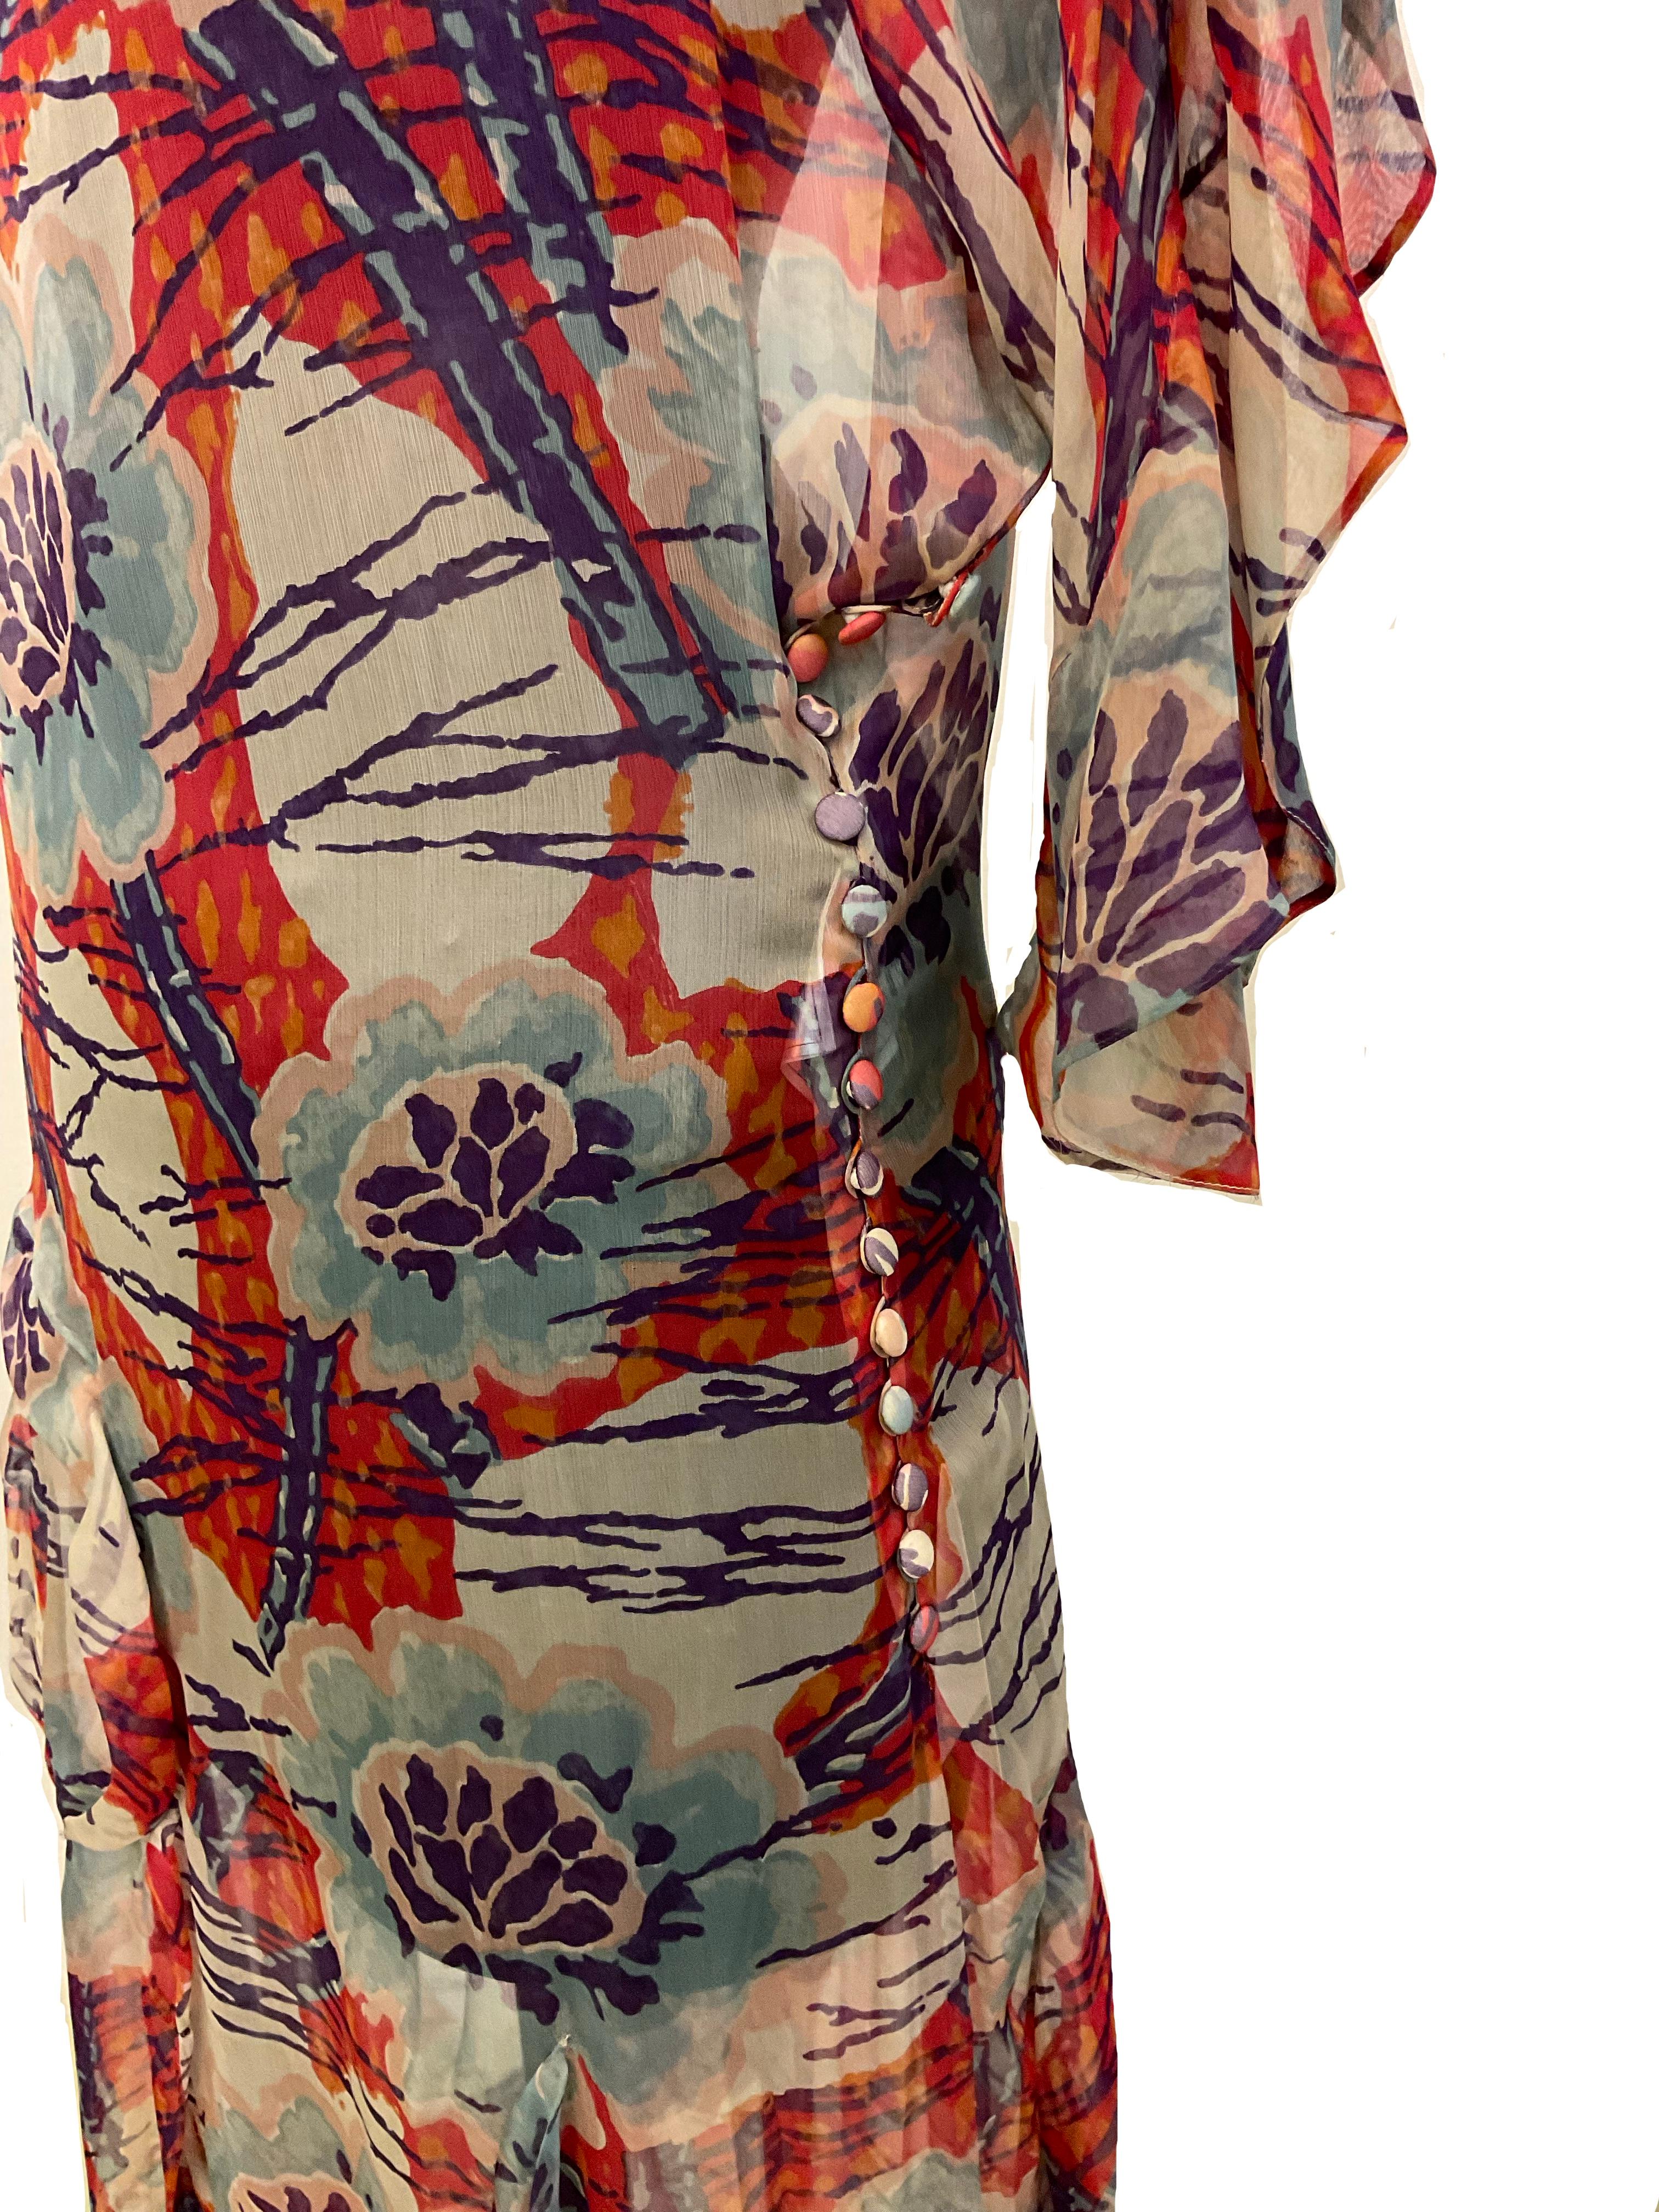 Kleid 'Ranunculus' aus 100% Seide, bedruckt mit einem zarten floralen Muster aus
John Galliano aus der Ready to Wear Herbst-Winter-Kollektion
2007.
Der Druck ist zart, in Rot-, Aquablau- und Elfenbeintönen gehalten.
Die Linie des Kleides ist gerade